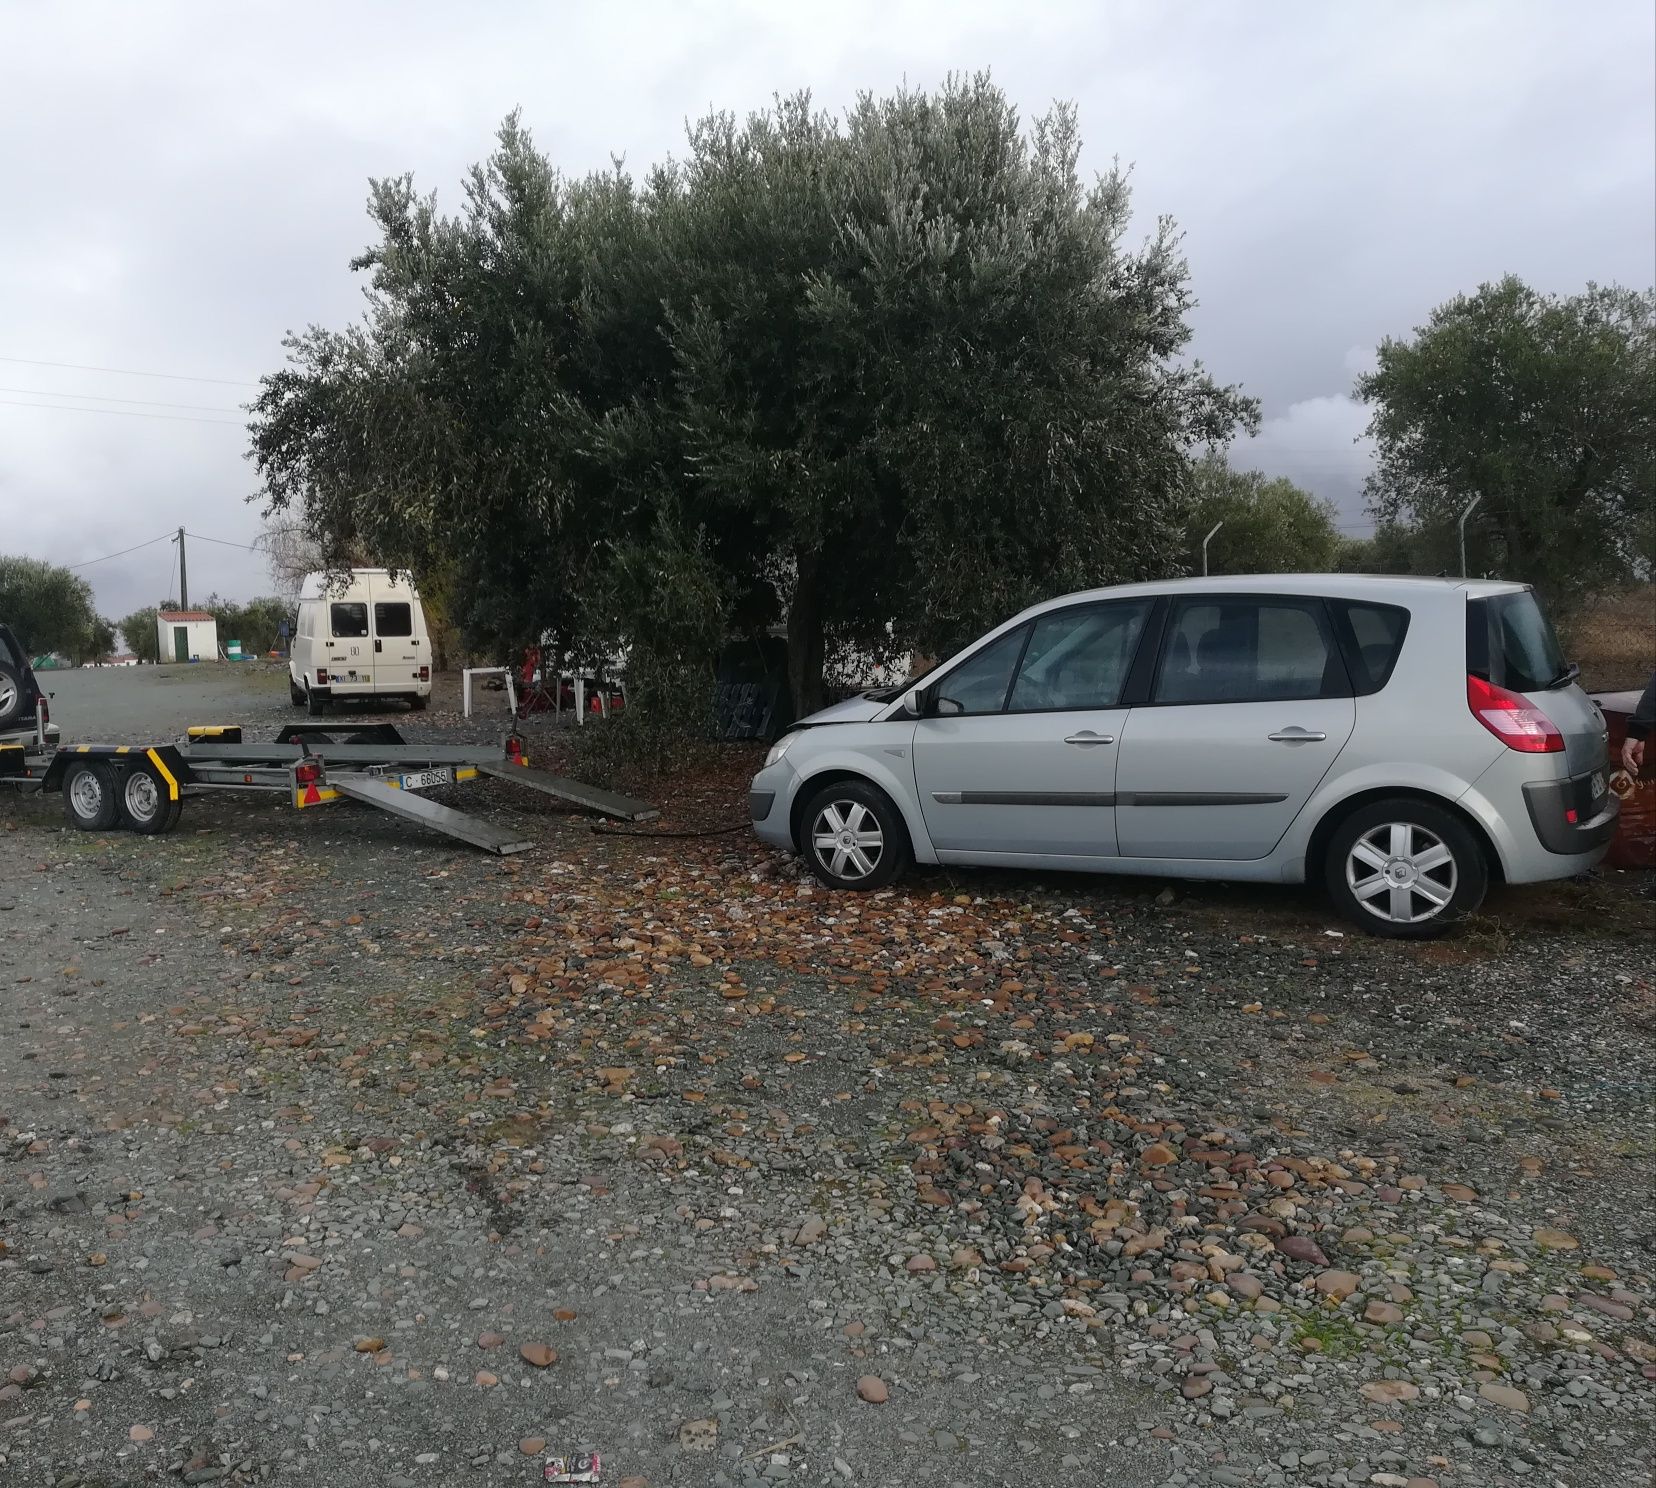 Serviço de Reboque Atrelado Carros Caravanas Auto tendas